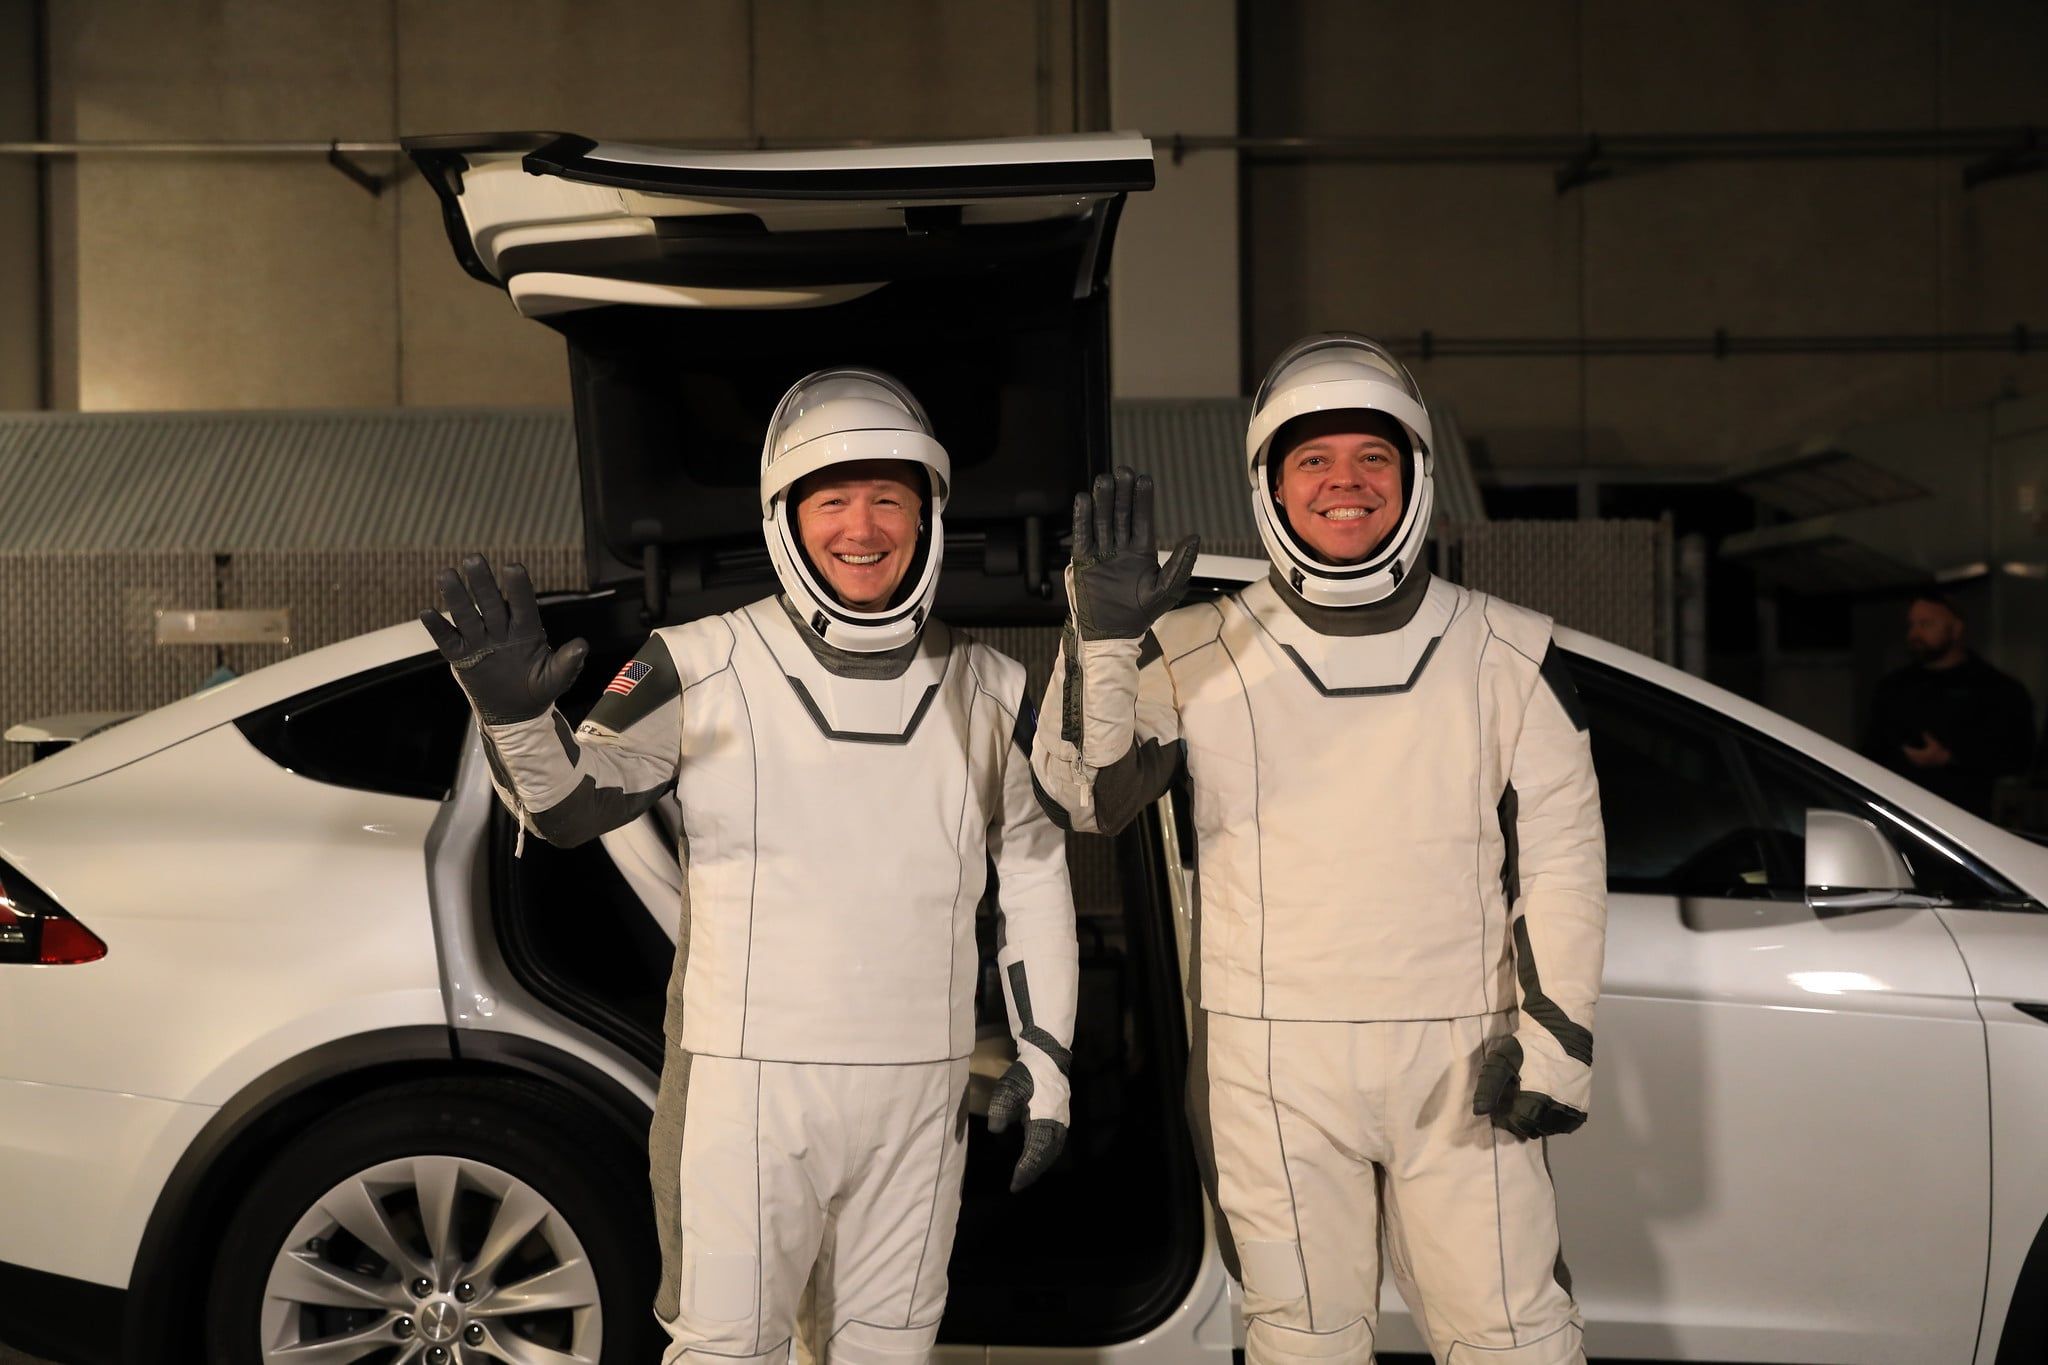 Hurley (left) and Behnken (right) boarding the Model X Astrovan